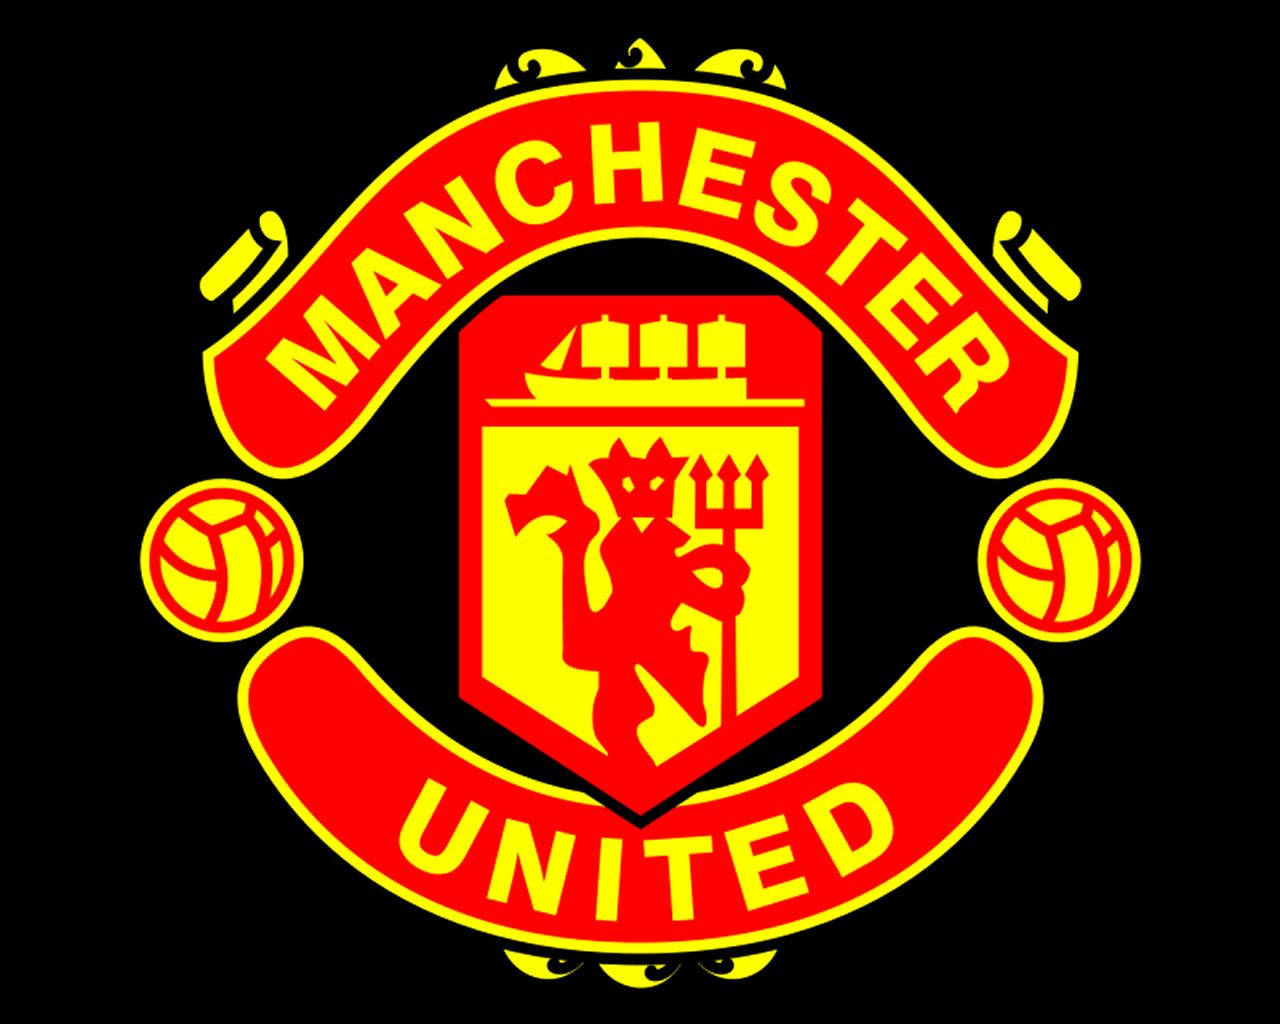 Logodo Manchester United Clube De Futebol. Papel de Parede